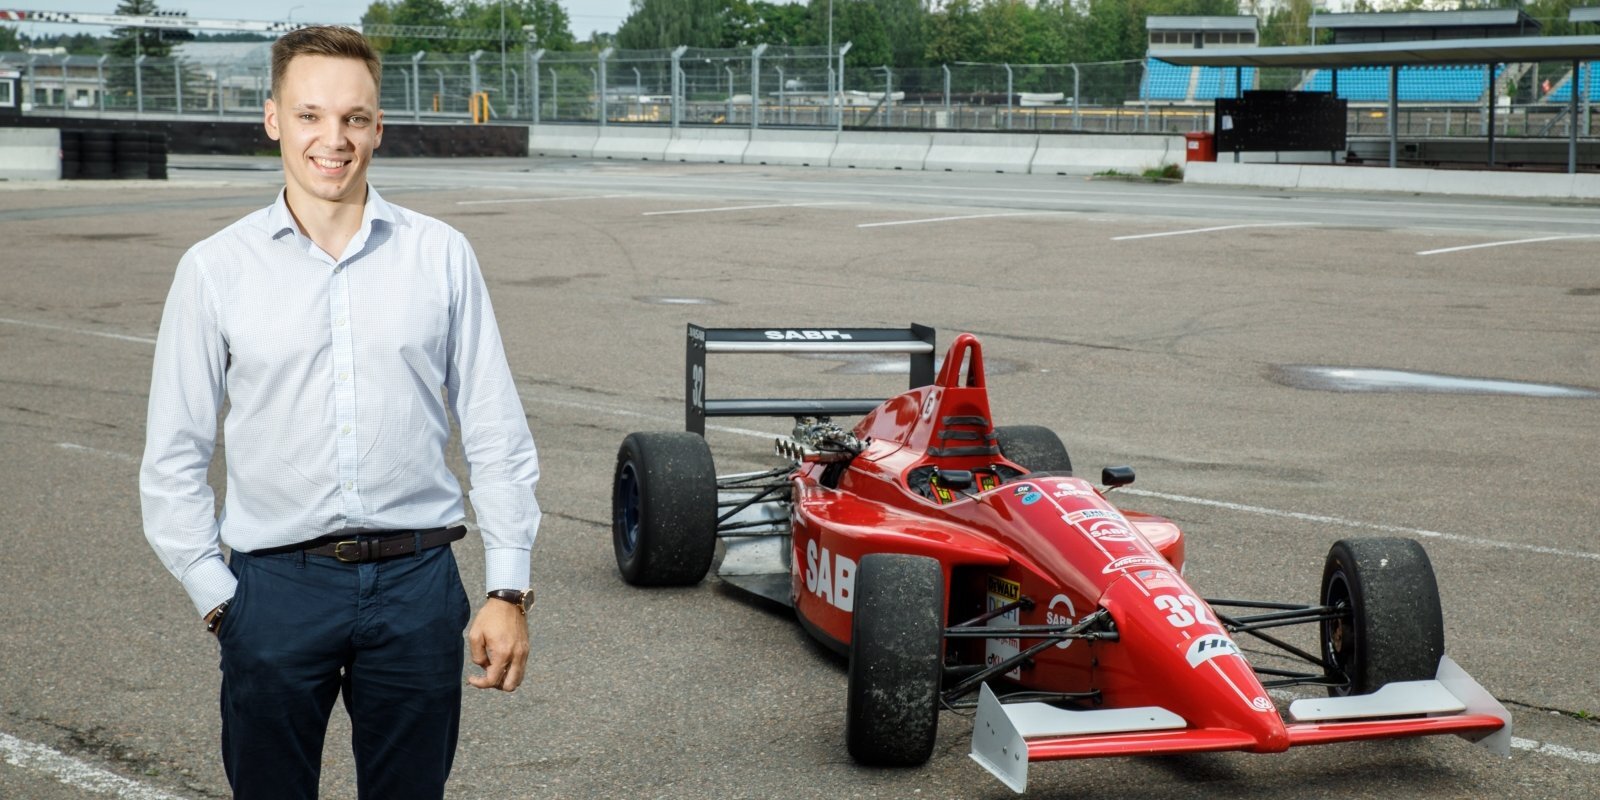 Собрал "Жигули", взялся за "Формулу-1". Как латвиец Мартиньш Залманс попал в элиту автоспорта